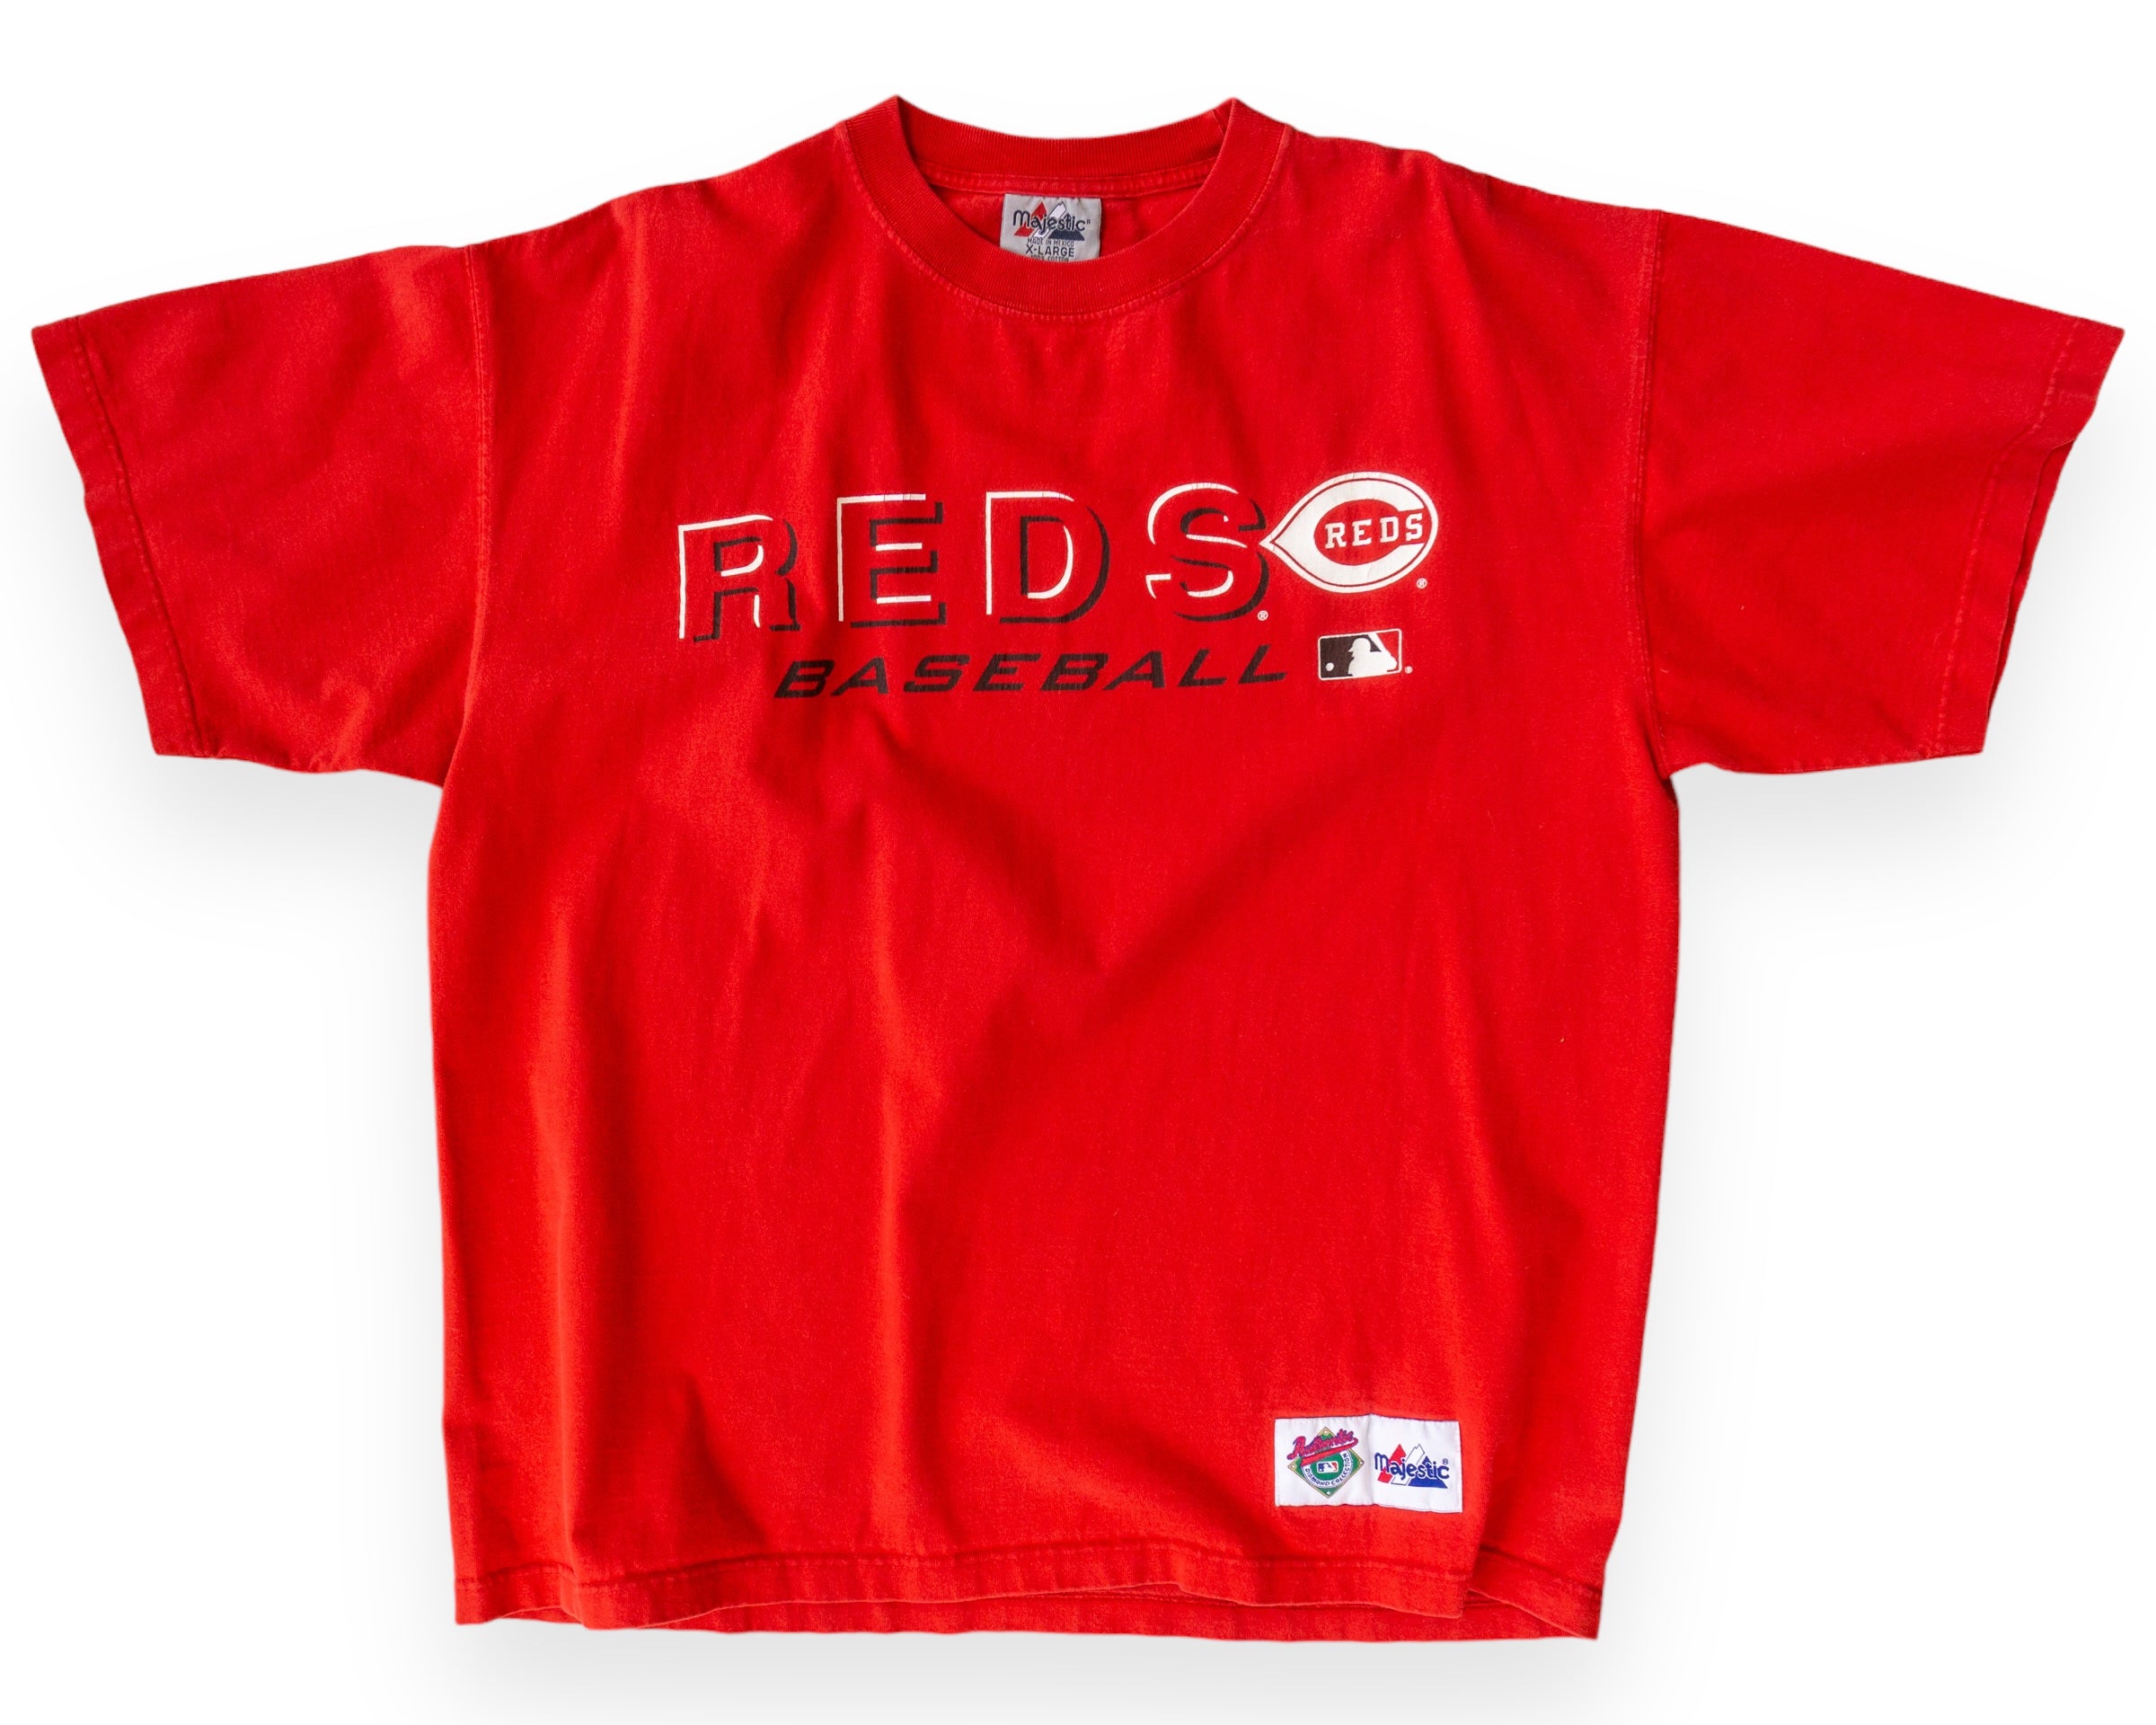 Cincinnati Reds Gear, Reds Merchandise, Reds Apparel, Store